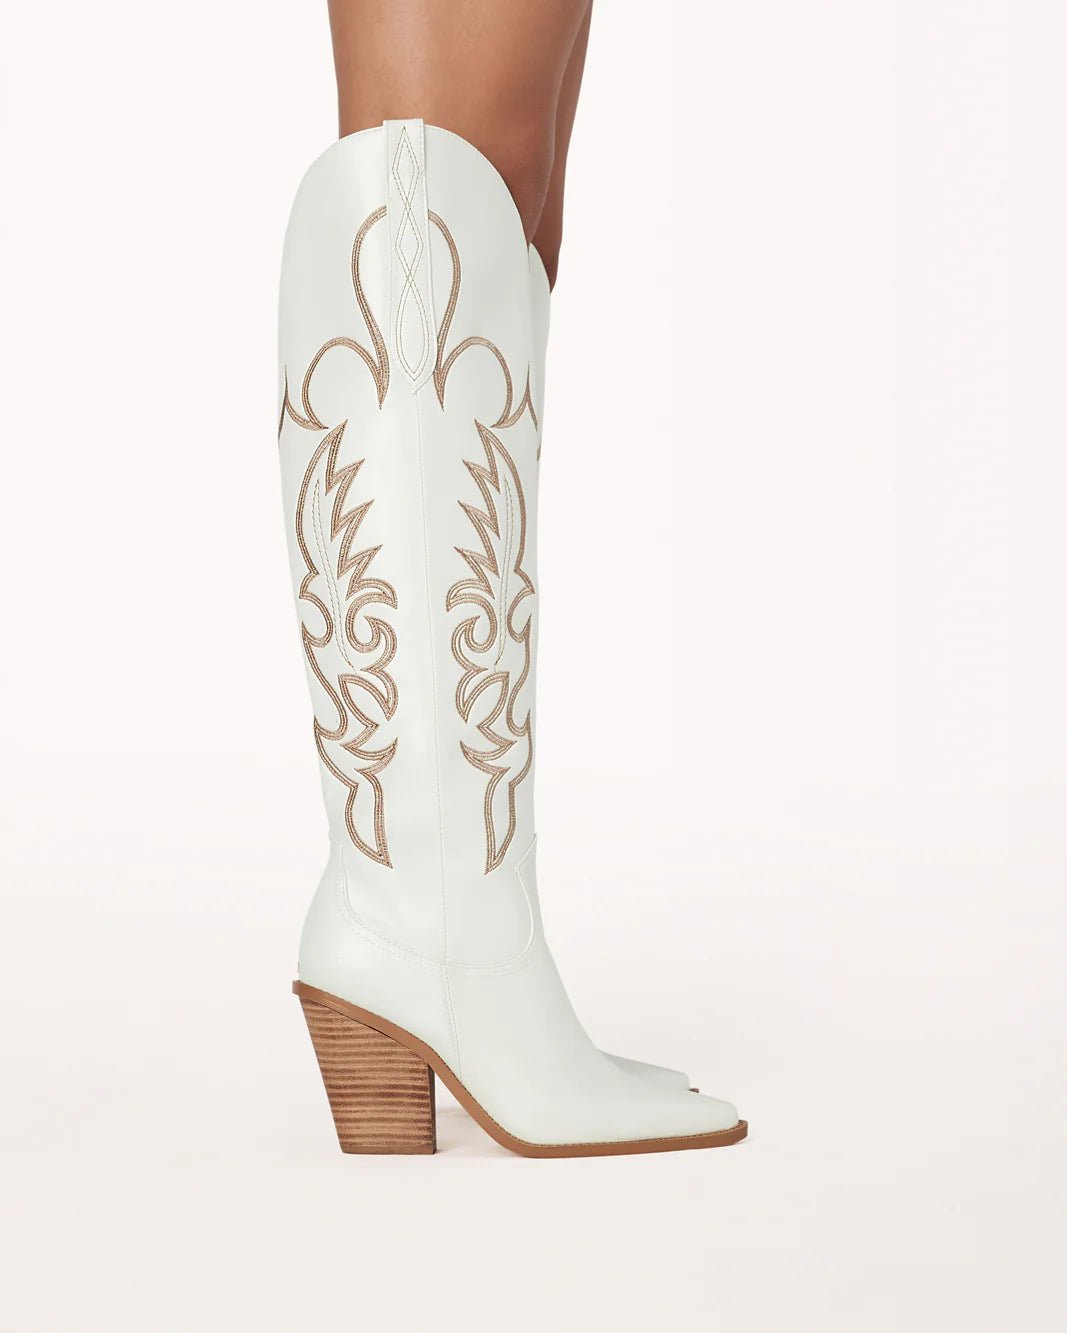 Simone Contrast Cowboy Boot White, Shoes by Billini Shoes | LIT Boutique